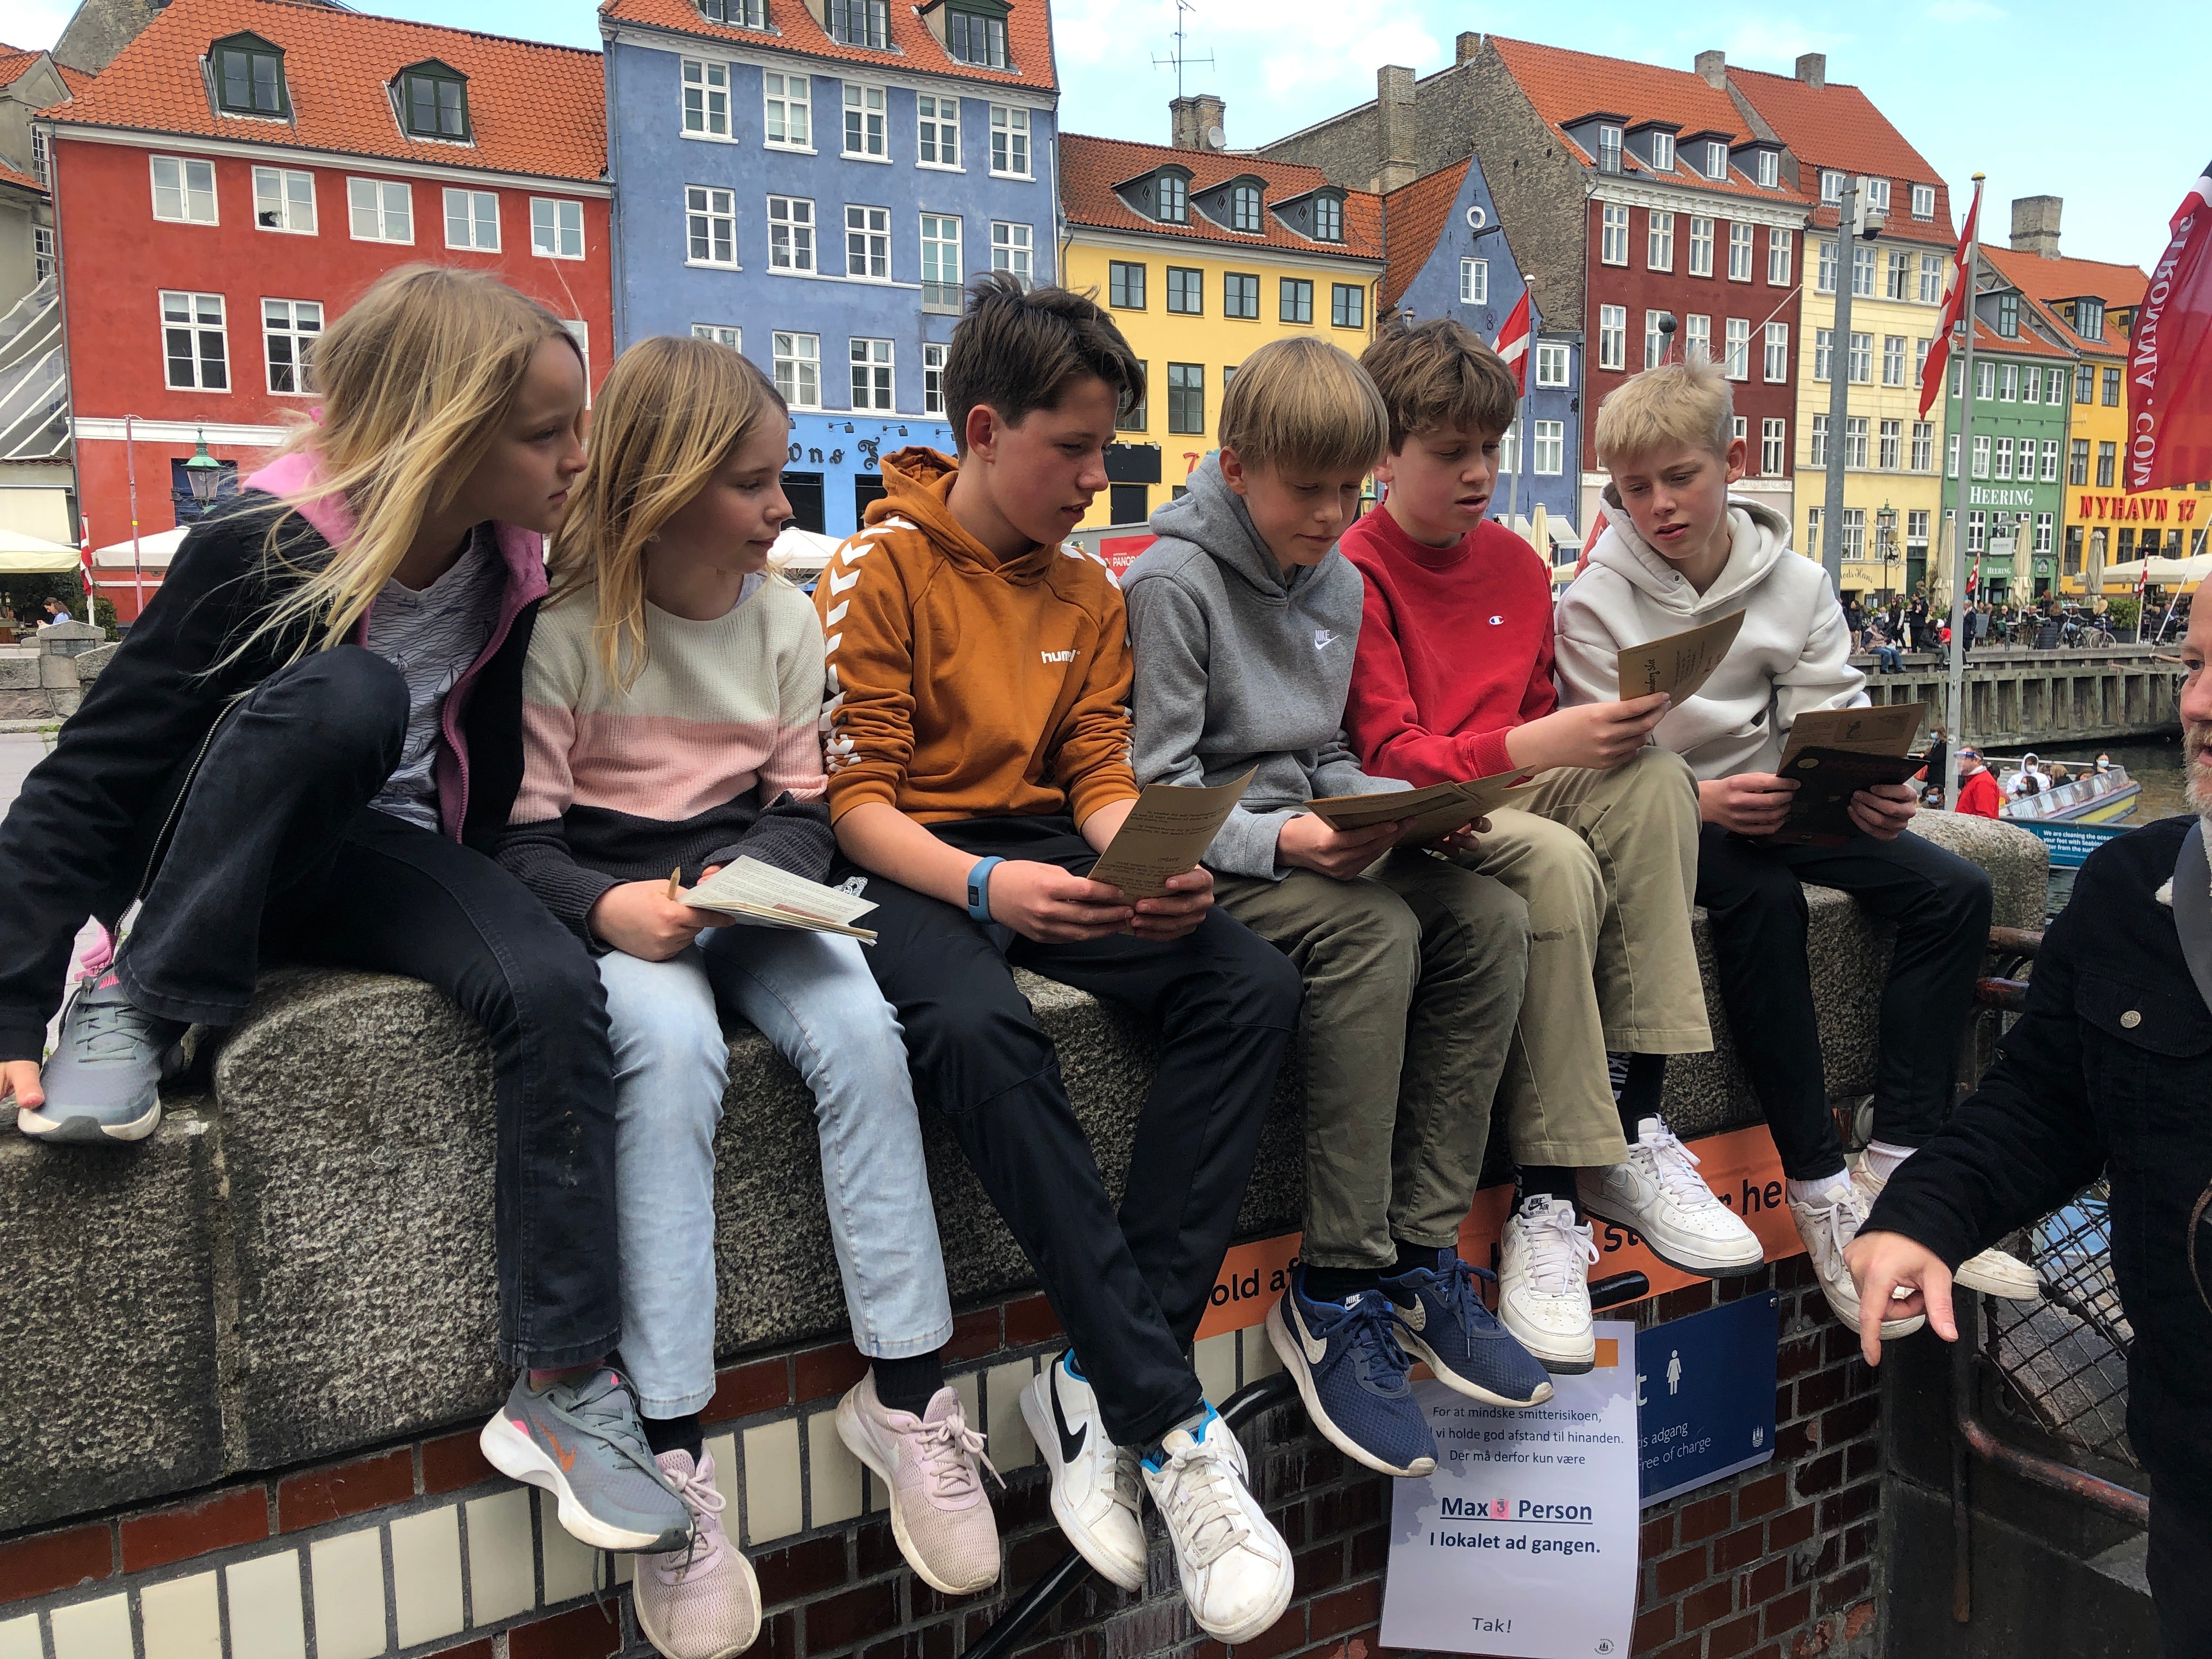 Copenhagen (Nyhavn) - An outdoor escape room